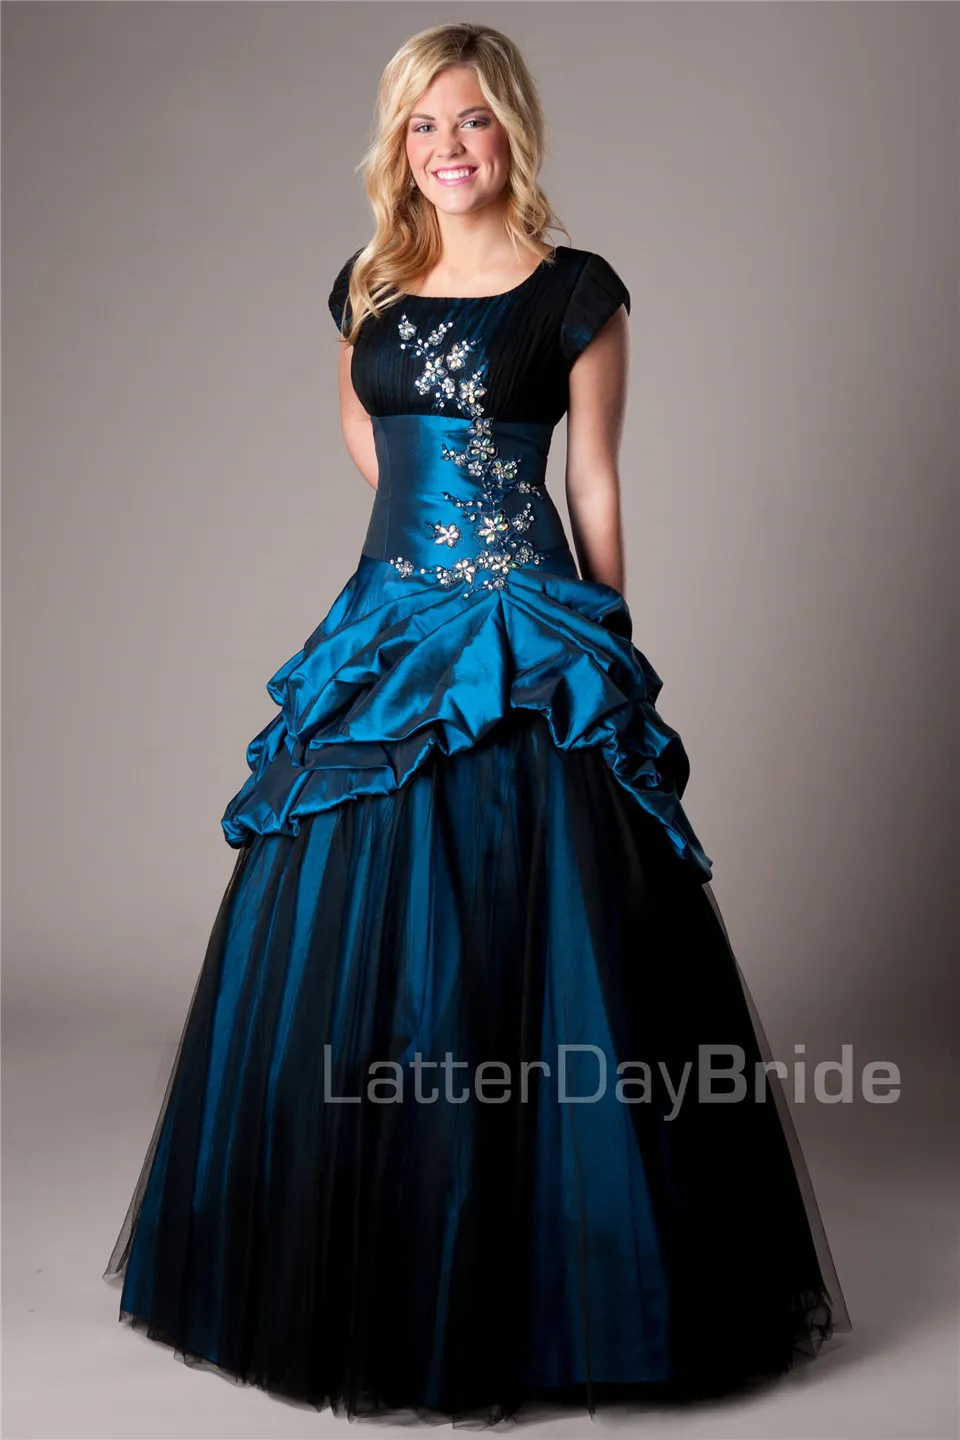 Bleu royal noir longue robe de bal robes de bal modestes avec manches courtes Vintage manches courtes taffetas aînés gonflé robe de soirée de bal 2671